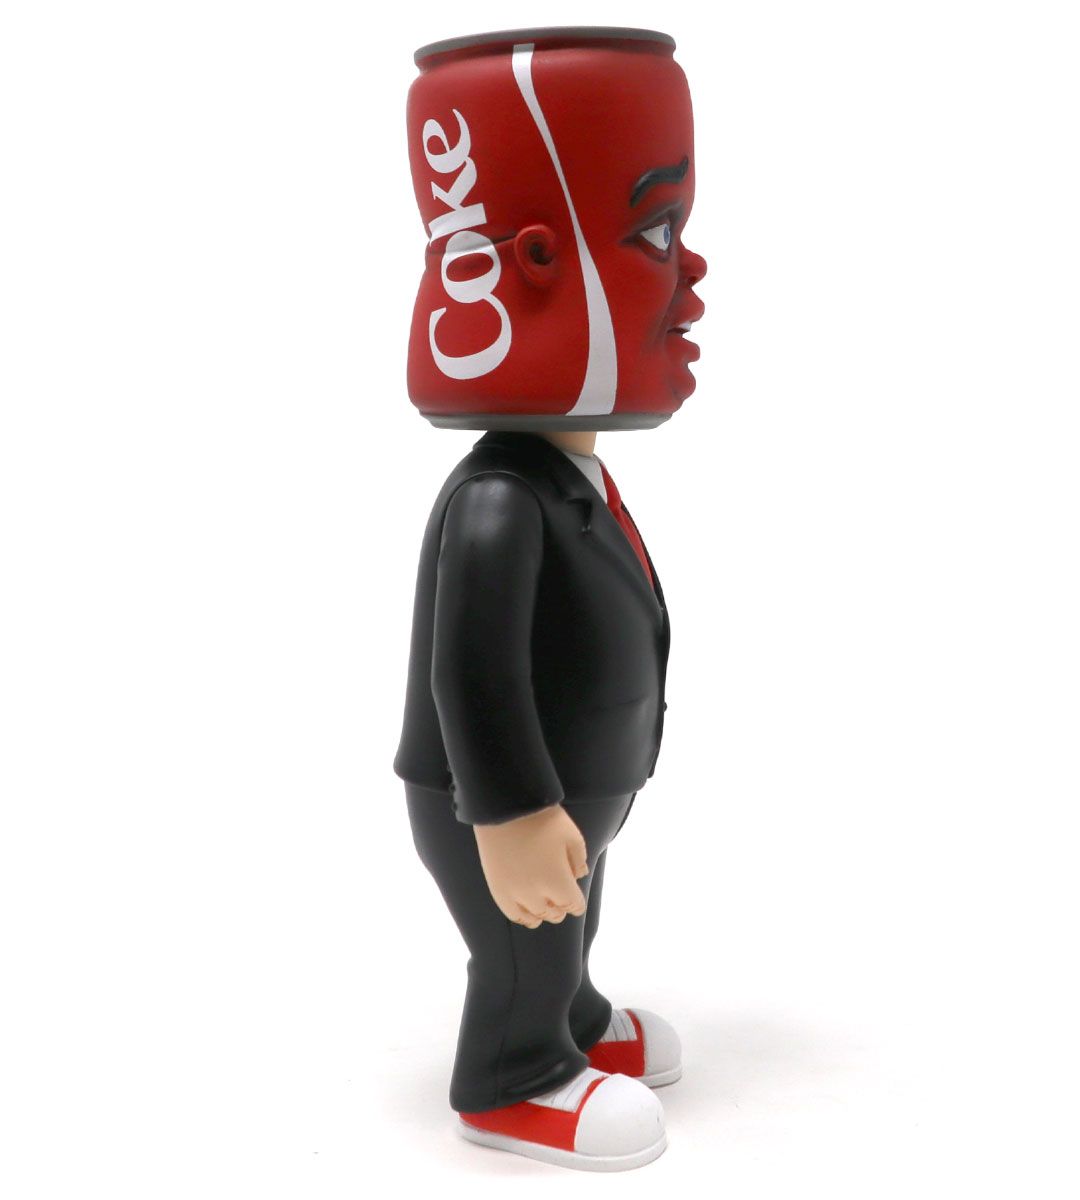 Coke Head - Bob Dob